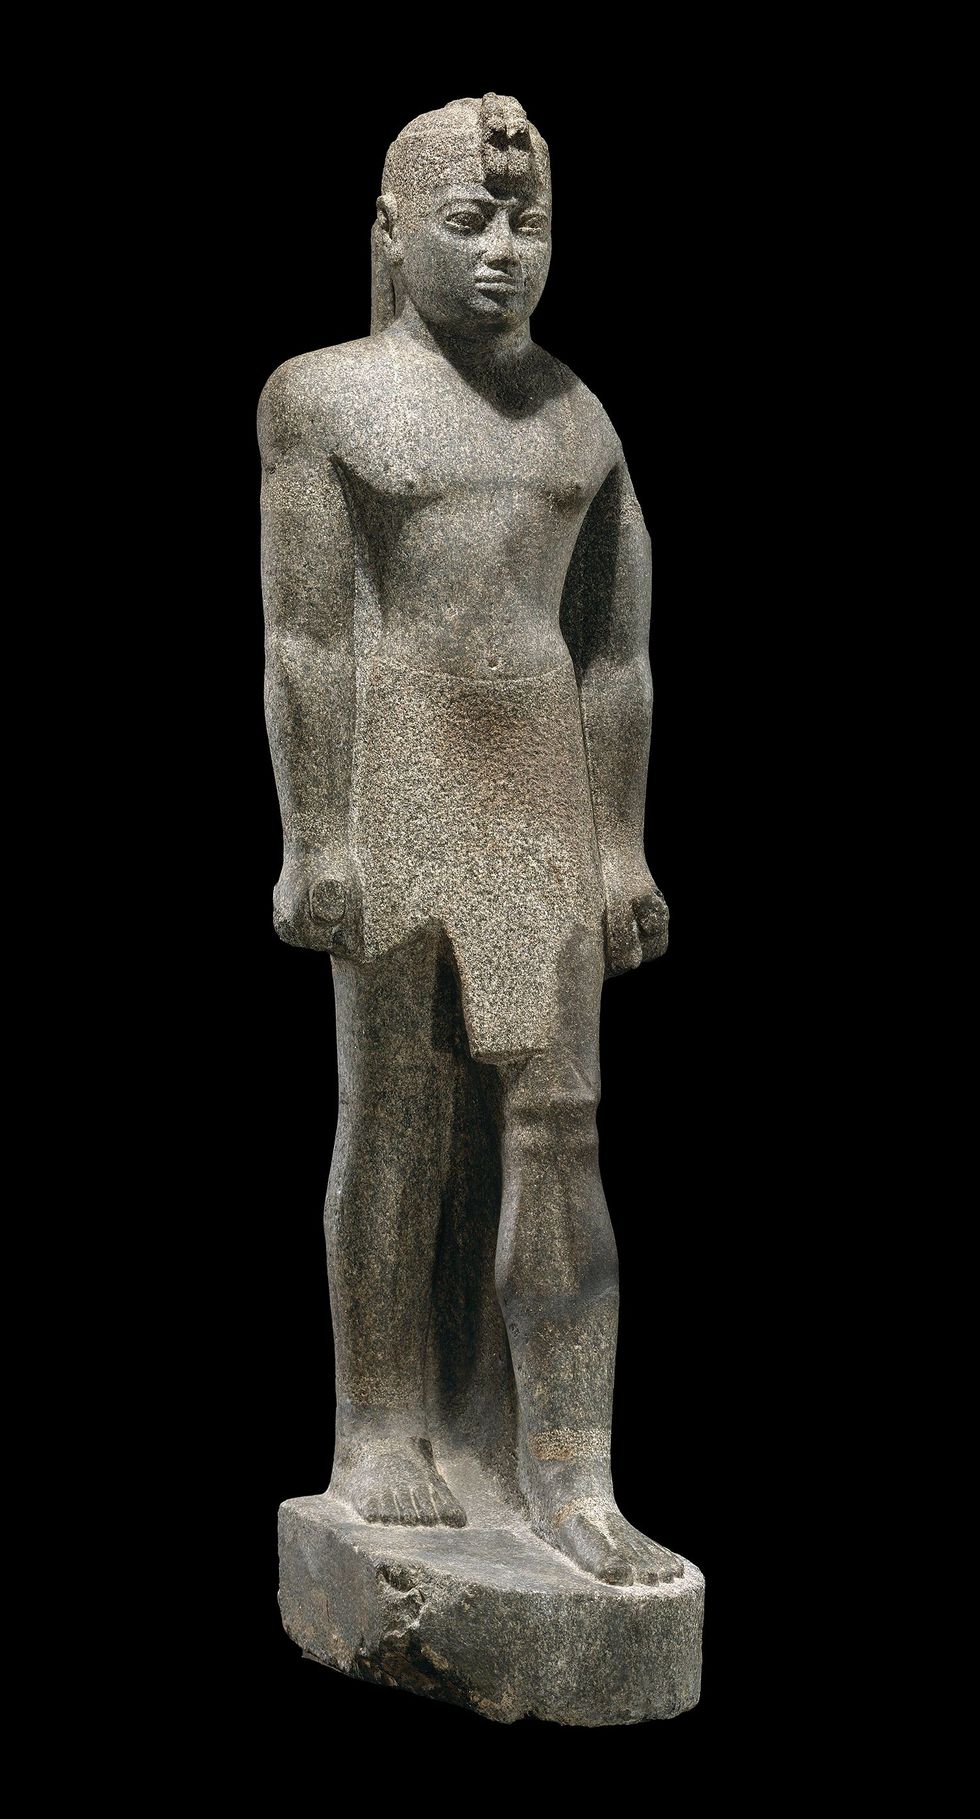 Koning Senkamanisken regeerde van 643 tot 623 vC kort nadat de zwarte faraos weer uit Egypte waren verdreven Zijn kroon sjendoet rok en regalia waren oorspronkelijk bedekt met bladgoud Hoogte 148cm gewicht 272kg